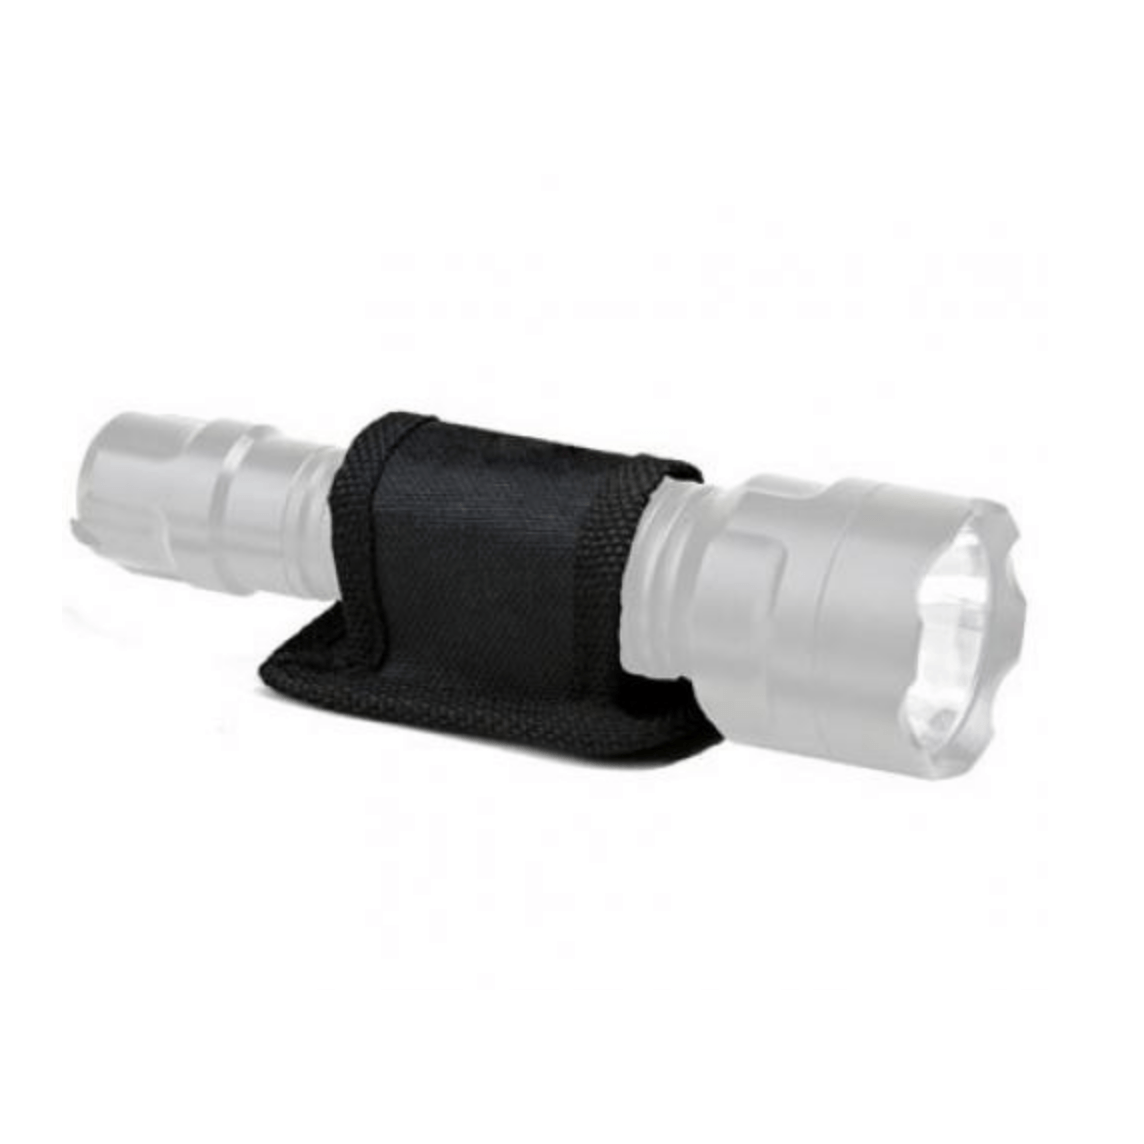 Mini Nylon Holster with Belt Loop - Ideal for Fogger Pepper Sprays -